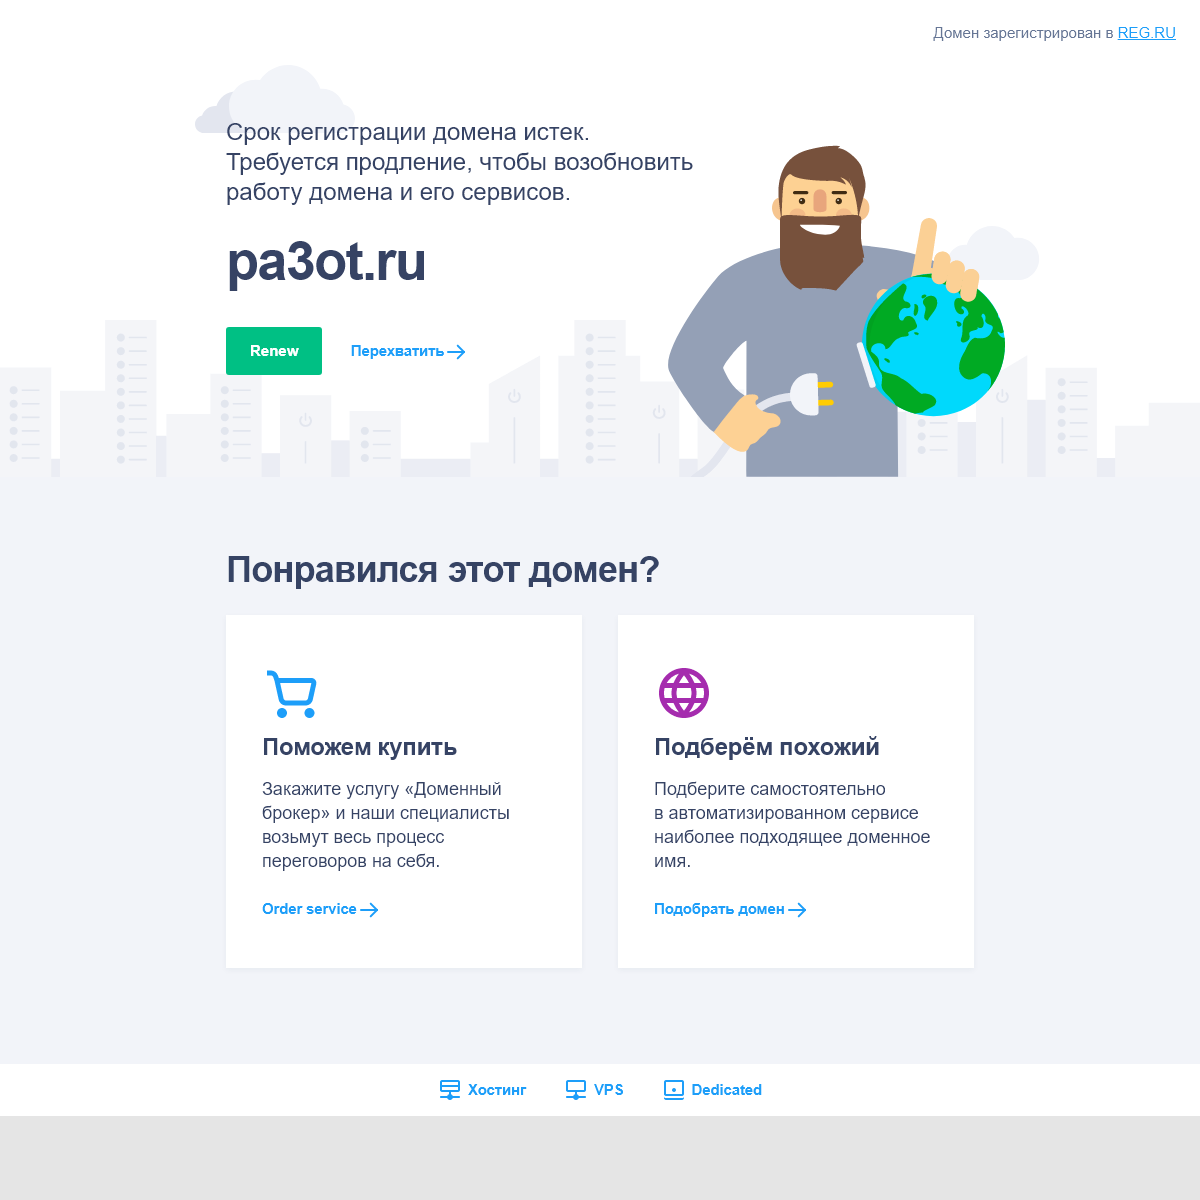 A complete backup of pa3ot.ru